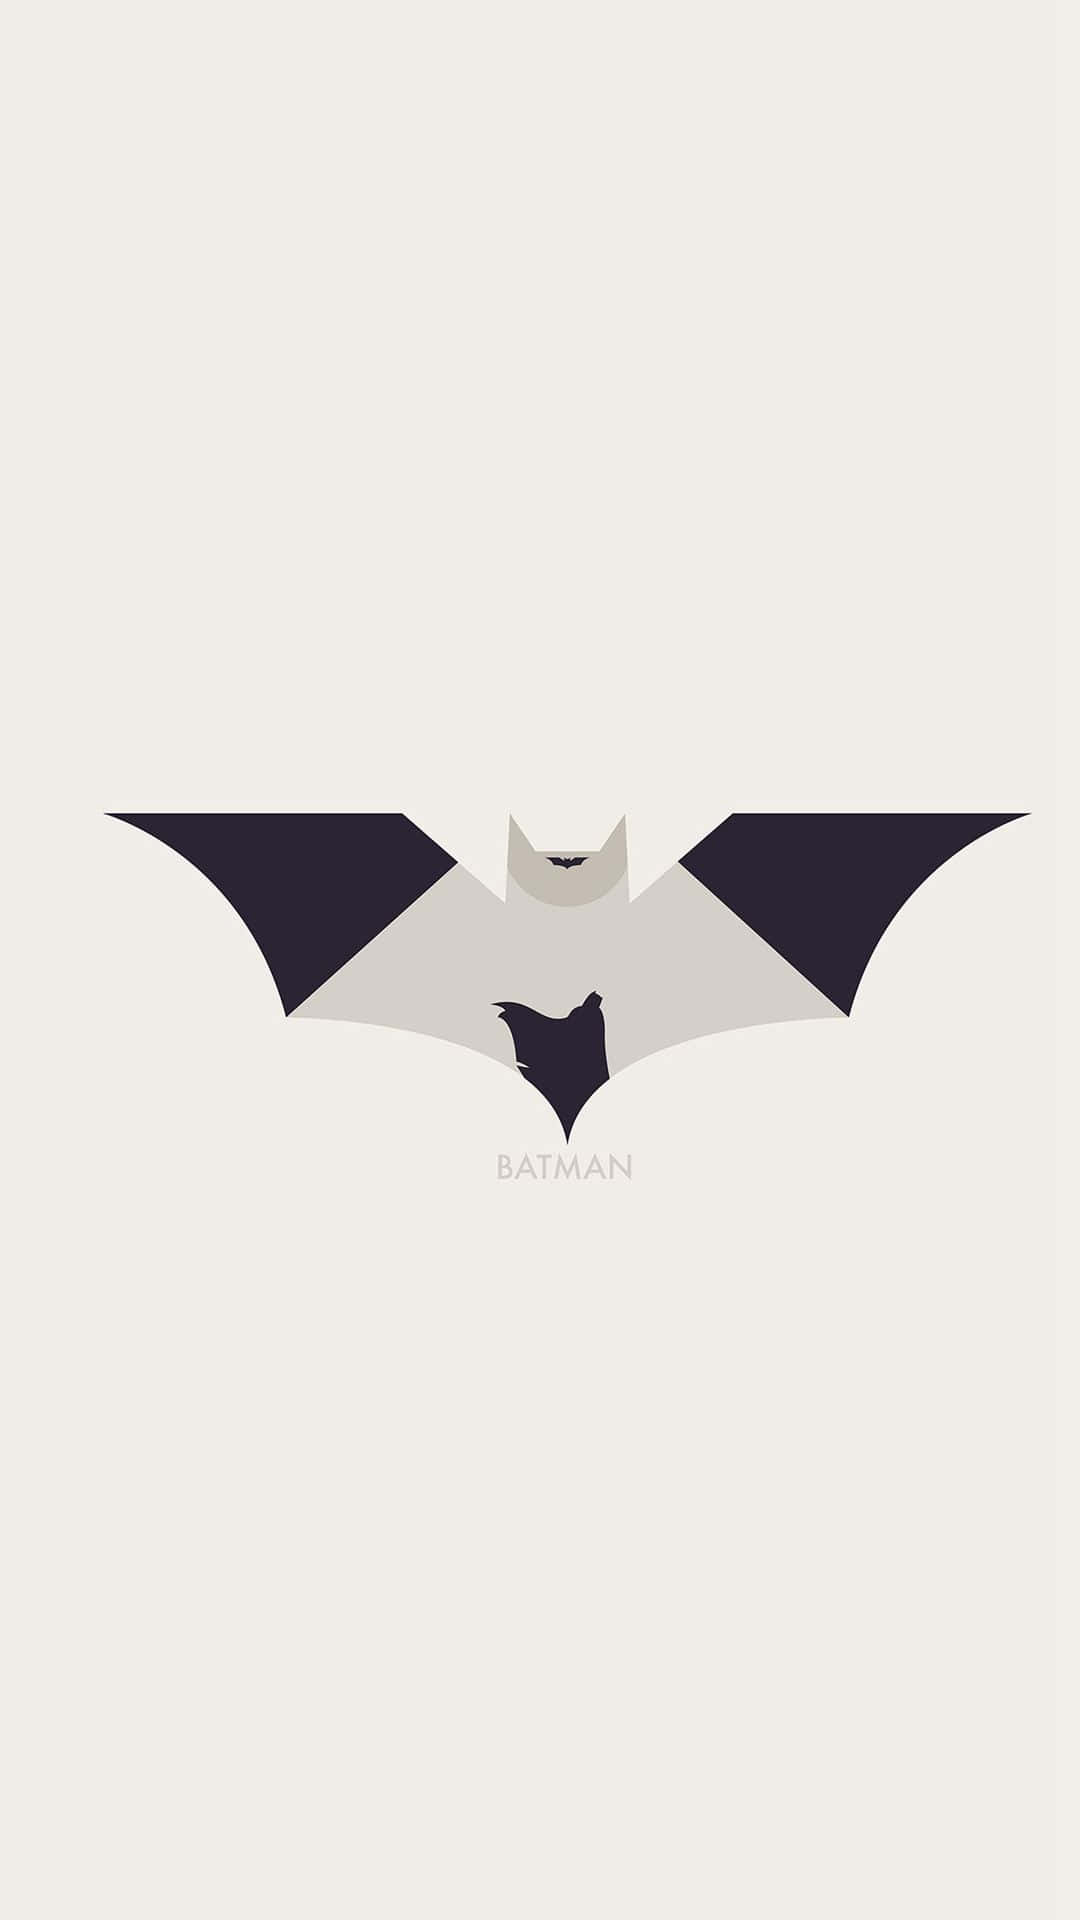 Batman - Batman - Batman - Batman - Batman - Batman - Batman - Batman - Wallpaper